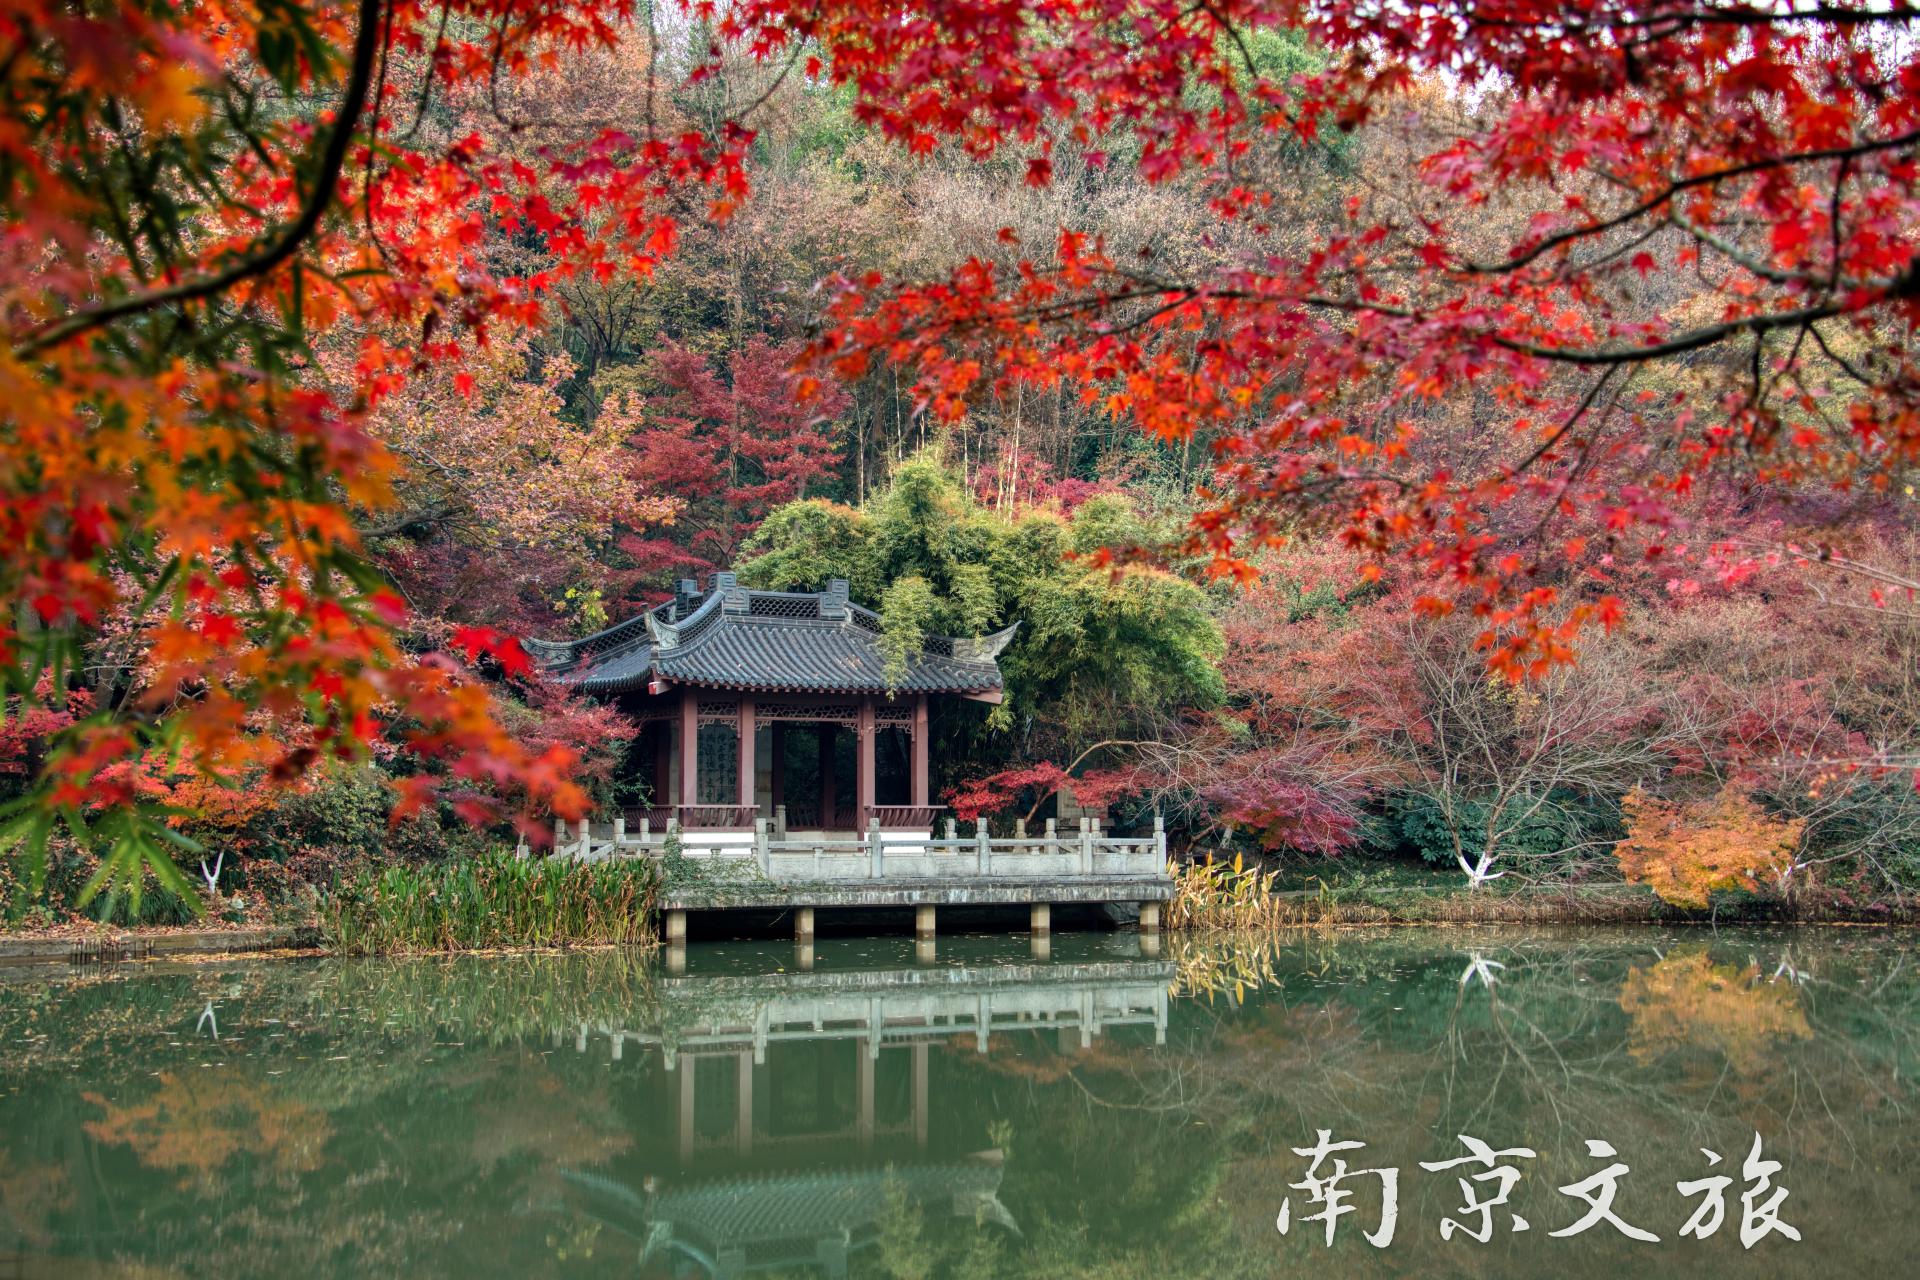  南京地接旅游景点,南京地接旅游赏秋景点